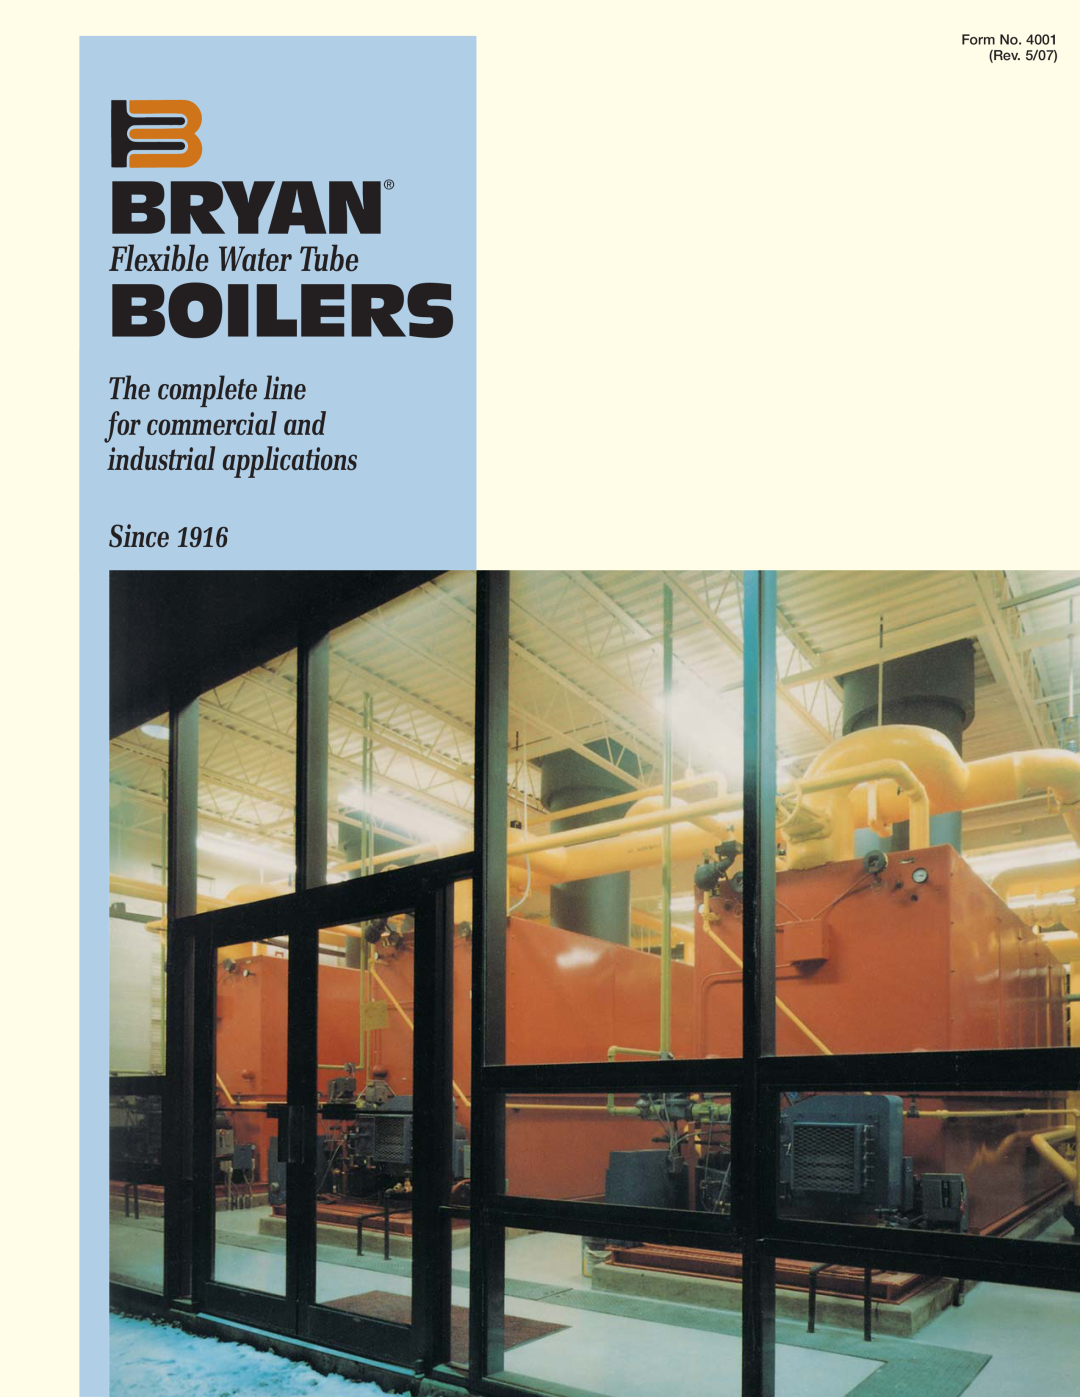 Bryan Boilers Flexible Water Tube Boilers manual Bryan, Since, Form No. 4001 Rev. 5/07 